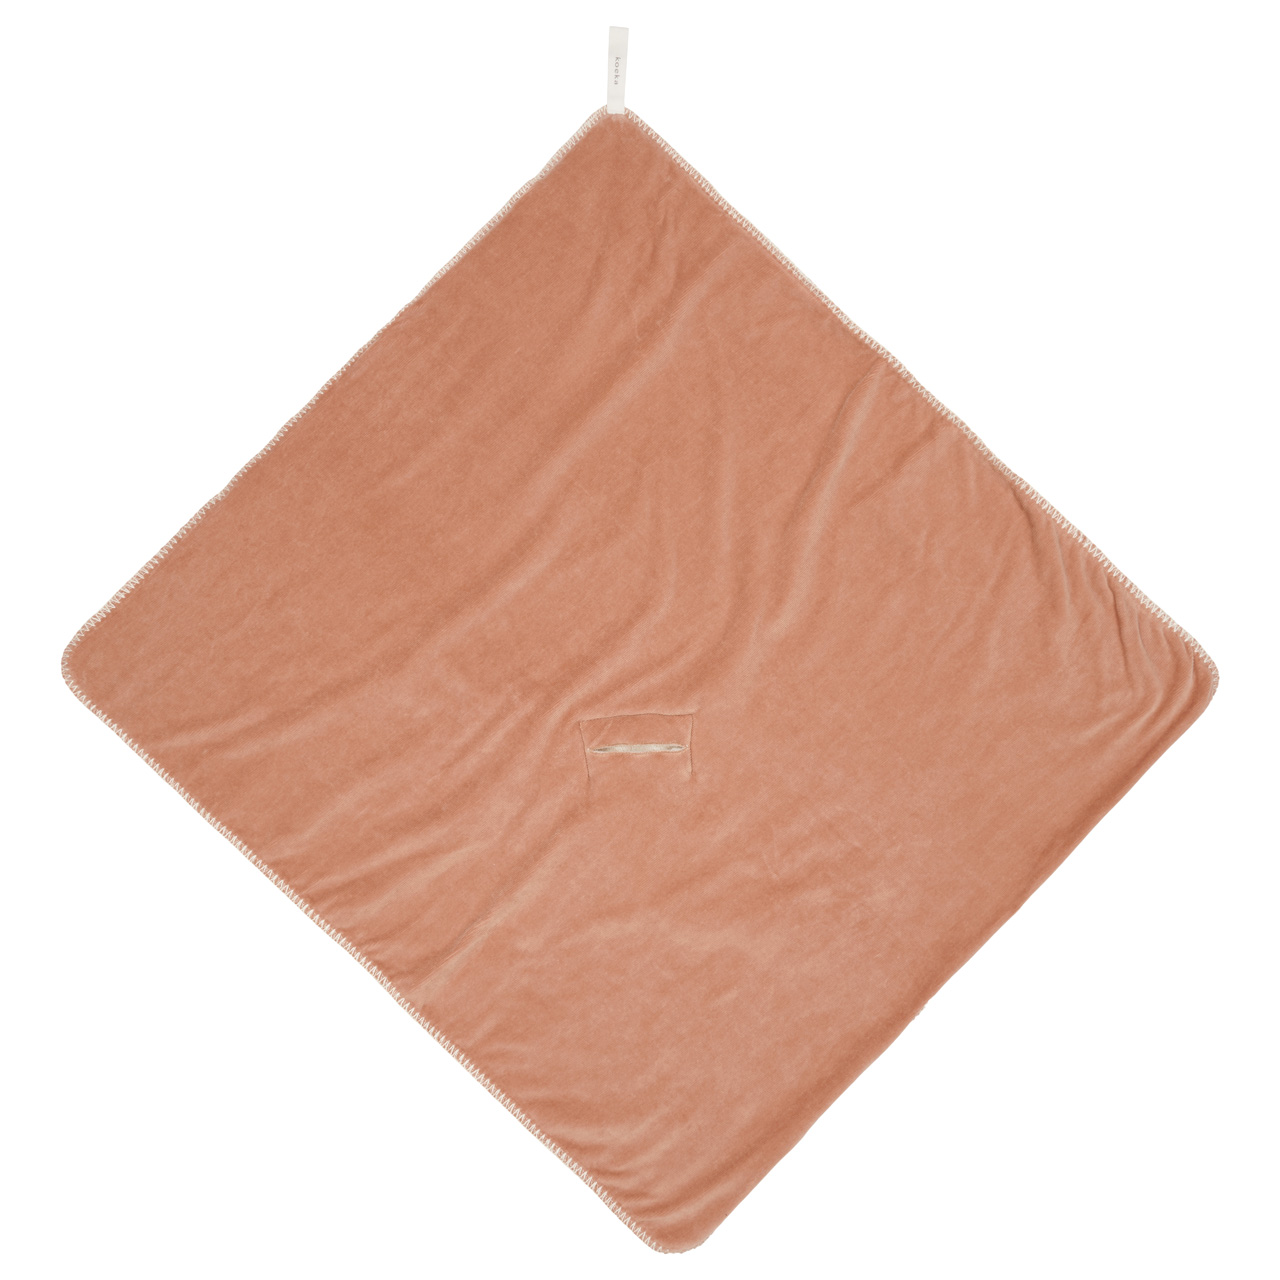 Wrap towel teddy Oddi soft earth